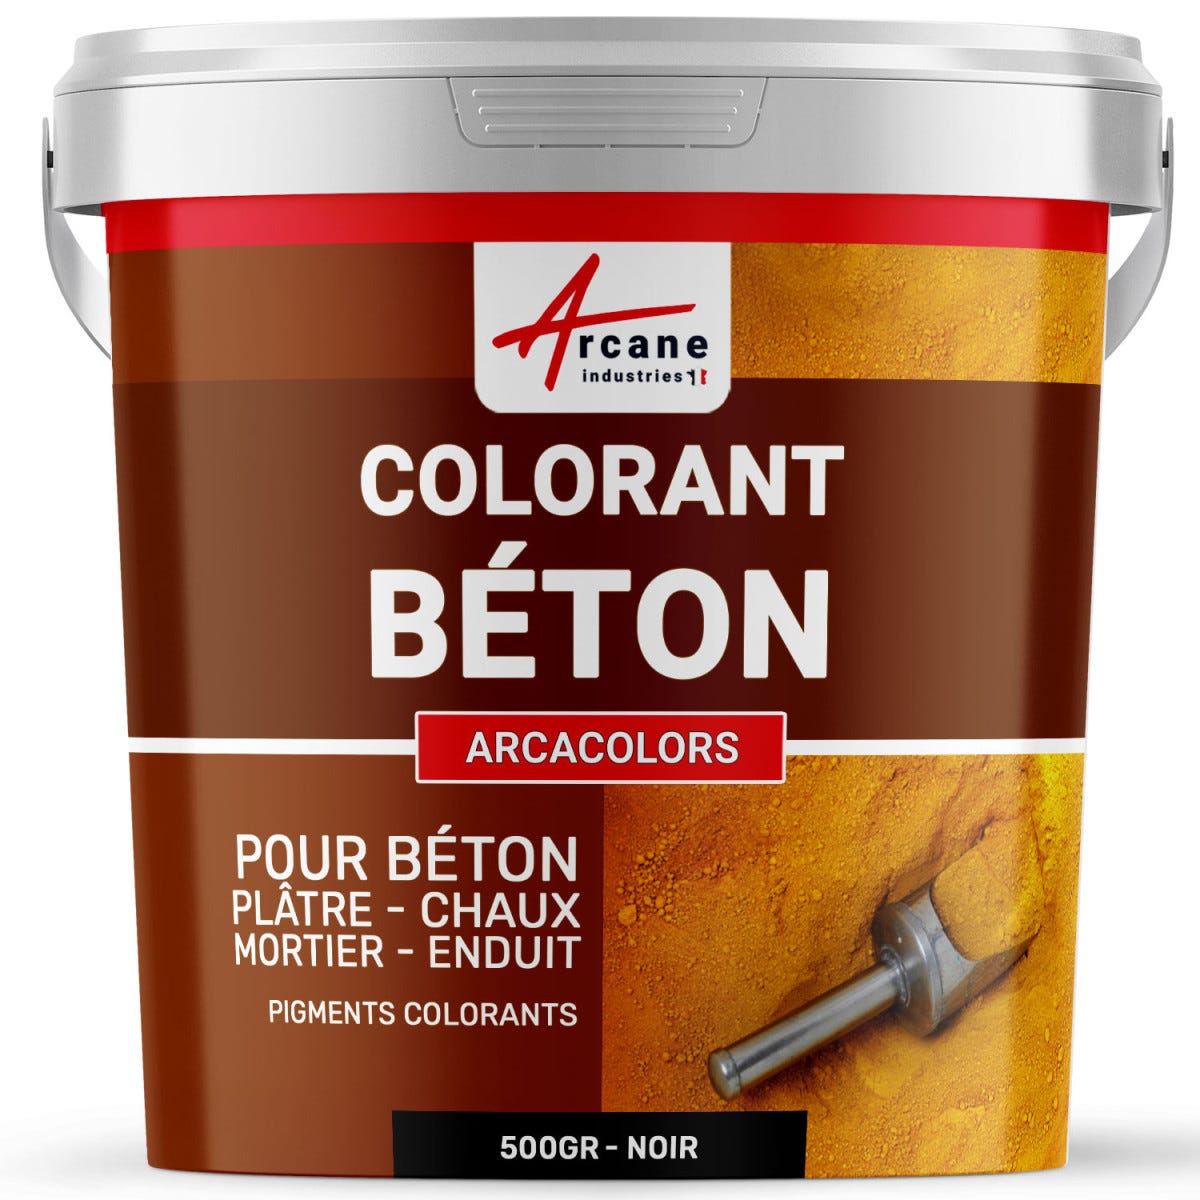 Pigments Colorants Premium pour enduit, béton, mortier, chaux, platre - ARCACOLORS - 500 gr - Noir - ARCANE INDUSTRIES 2